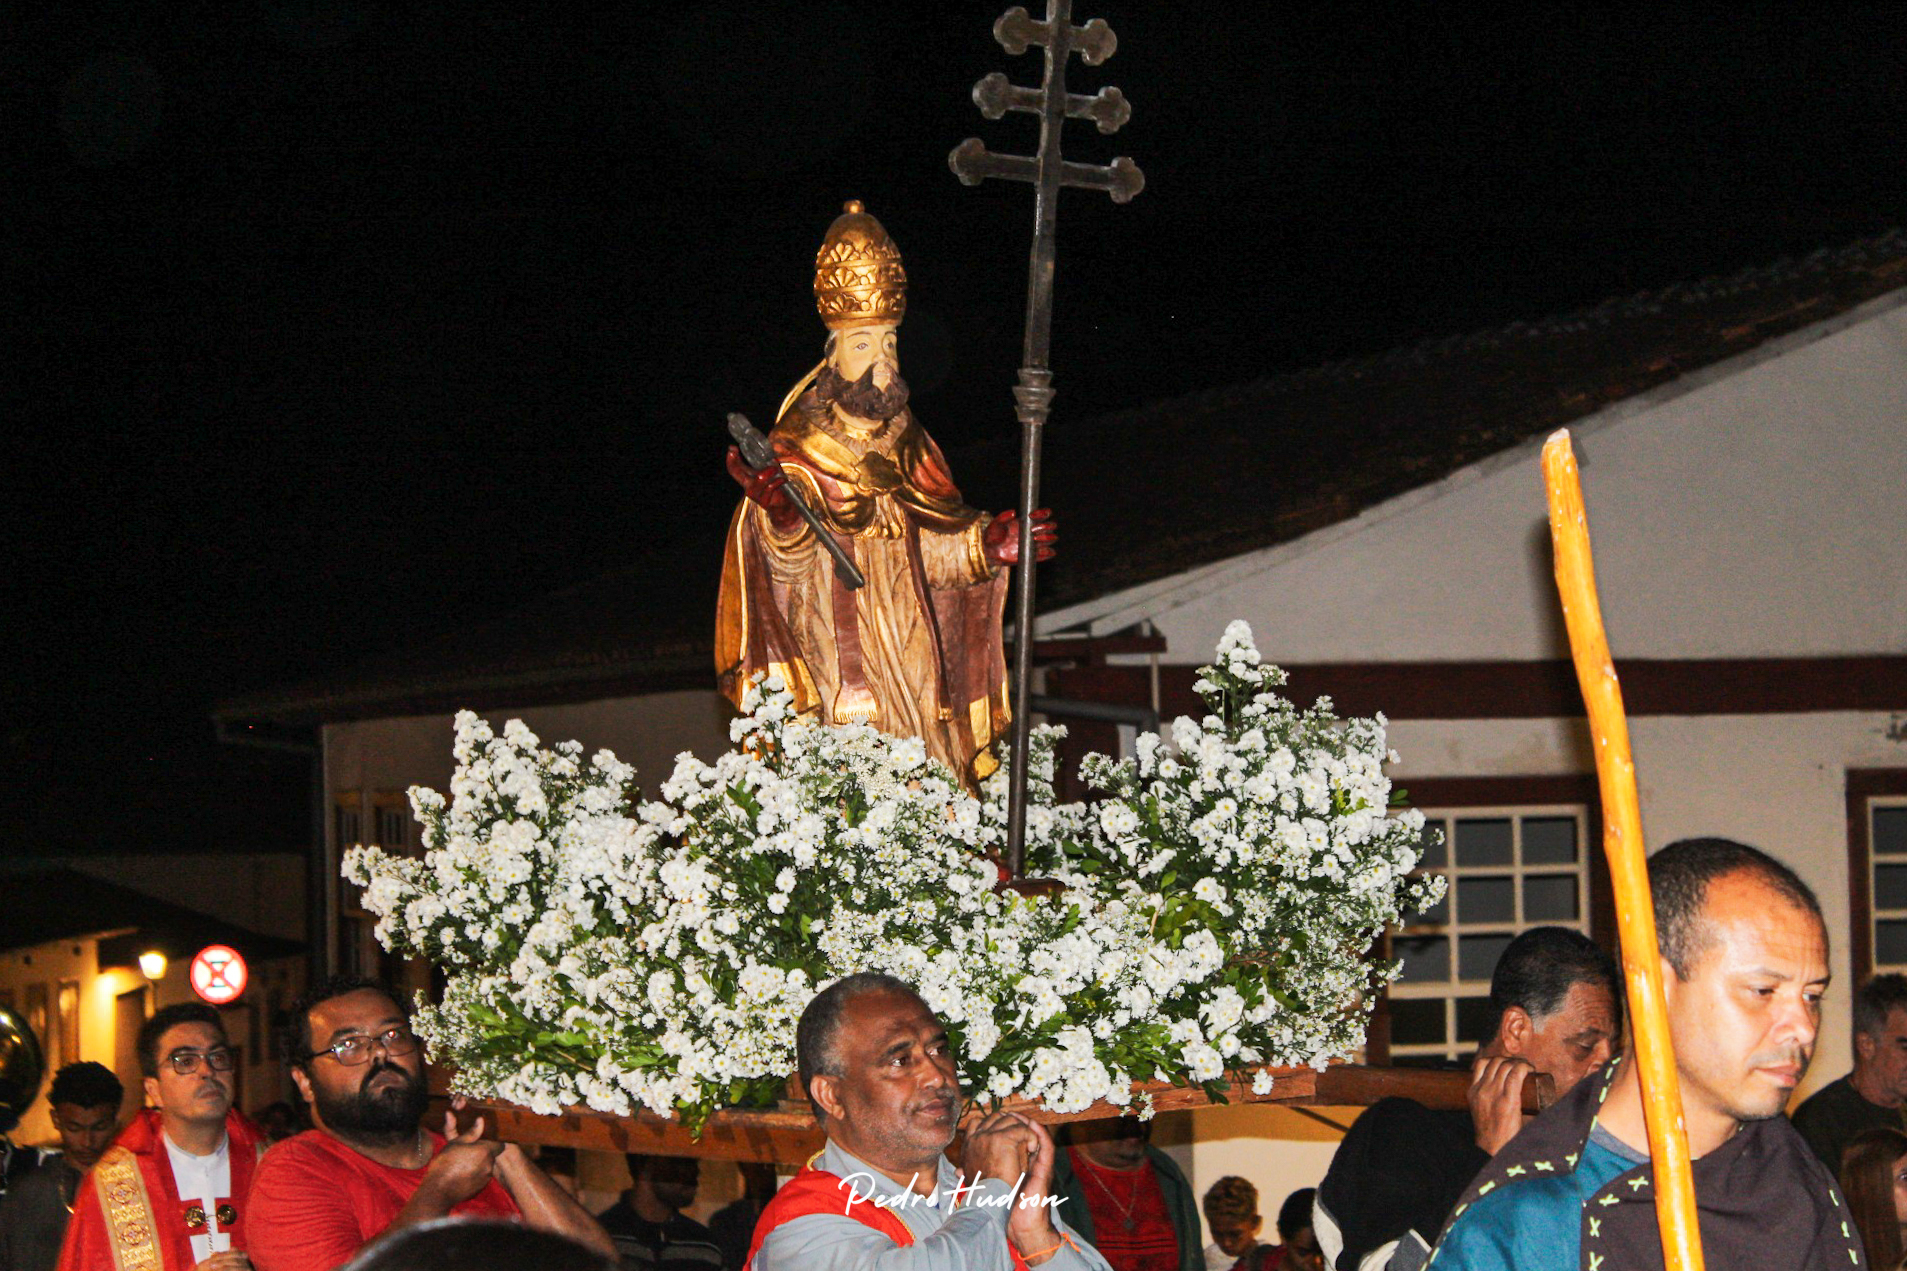 Festa de São Pedro